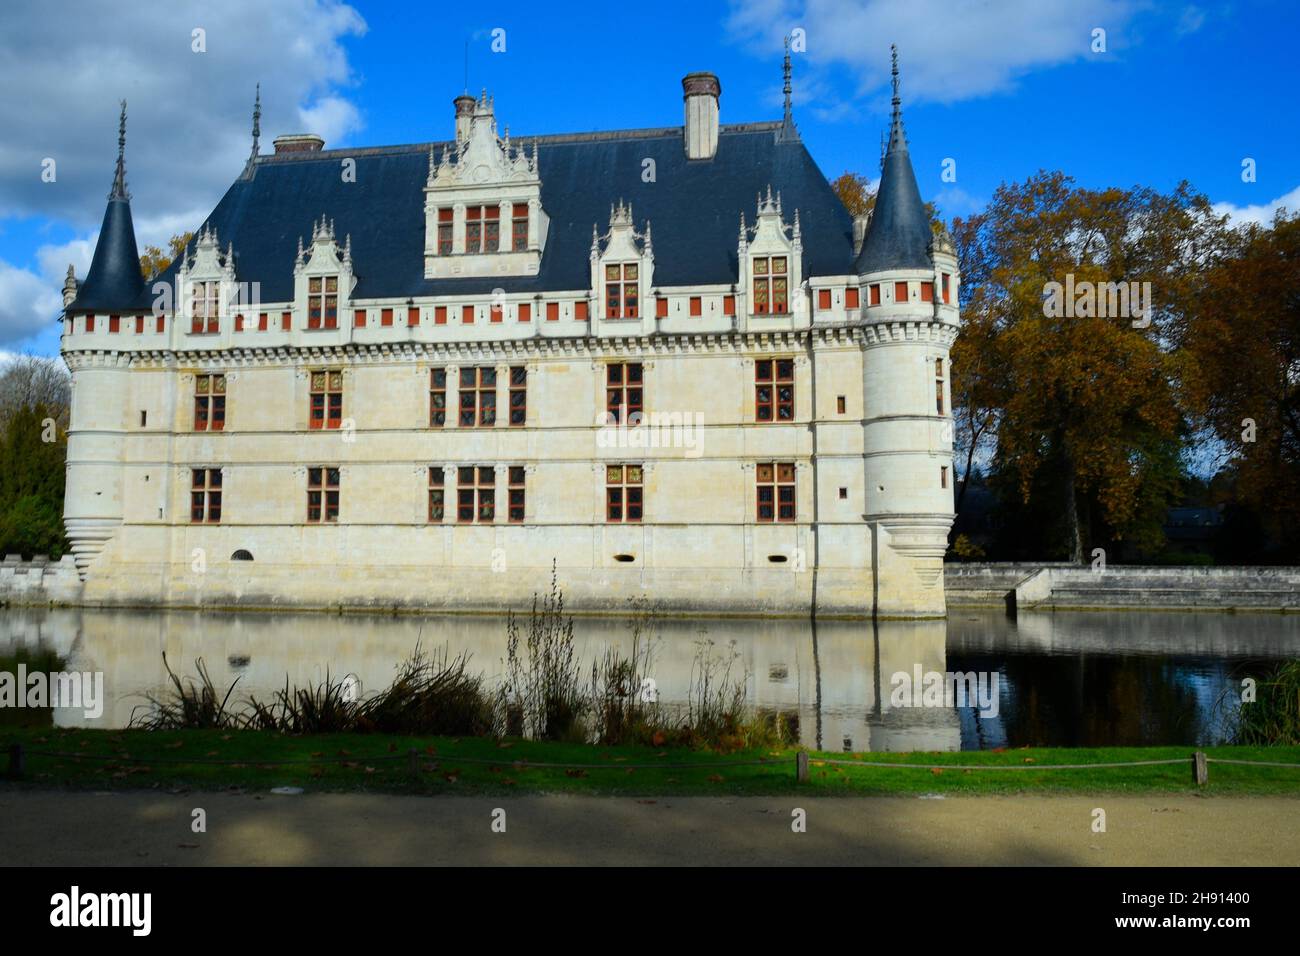 Chateau Azay-le-Rideau, Renaissance Castle on the Loire, UNESCO World Heritage Site, Department of Indre et Loire, France. Stock Photo